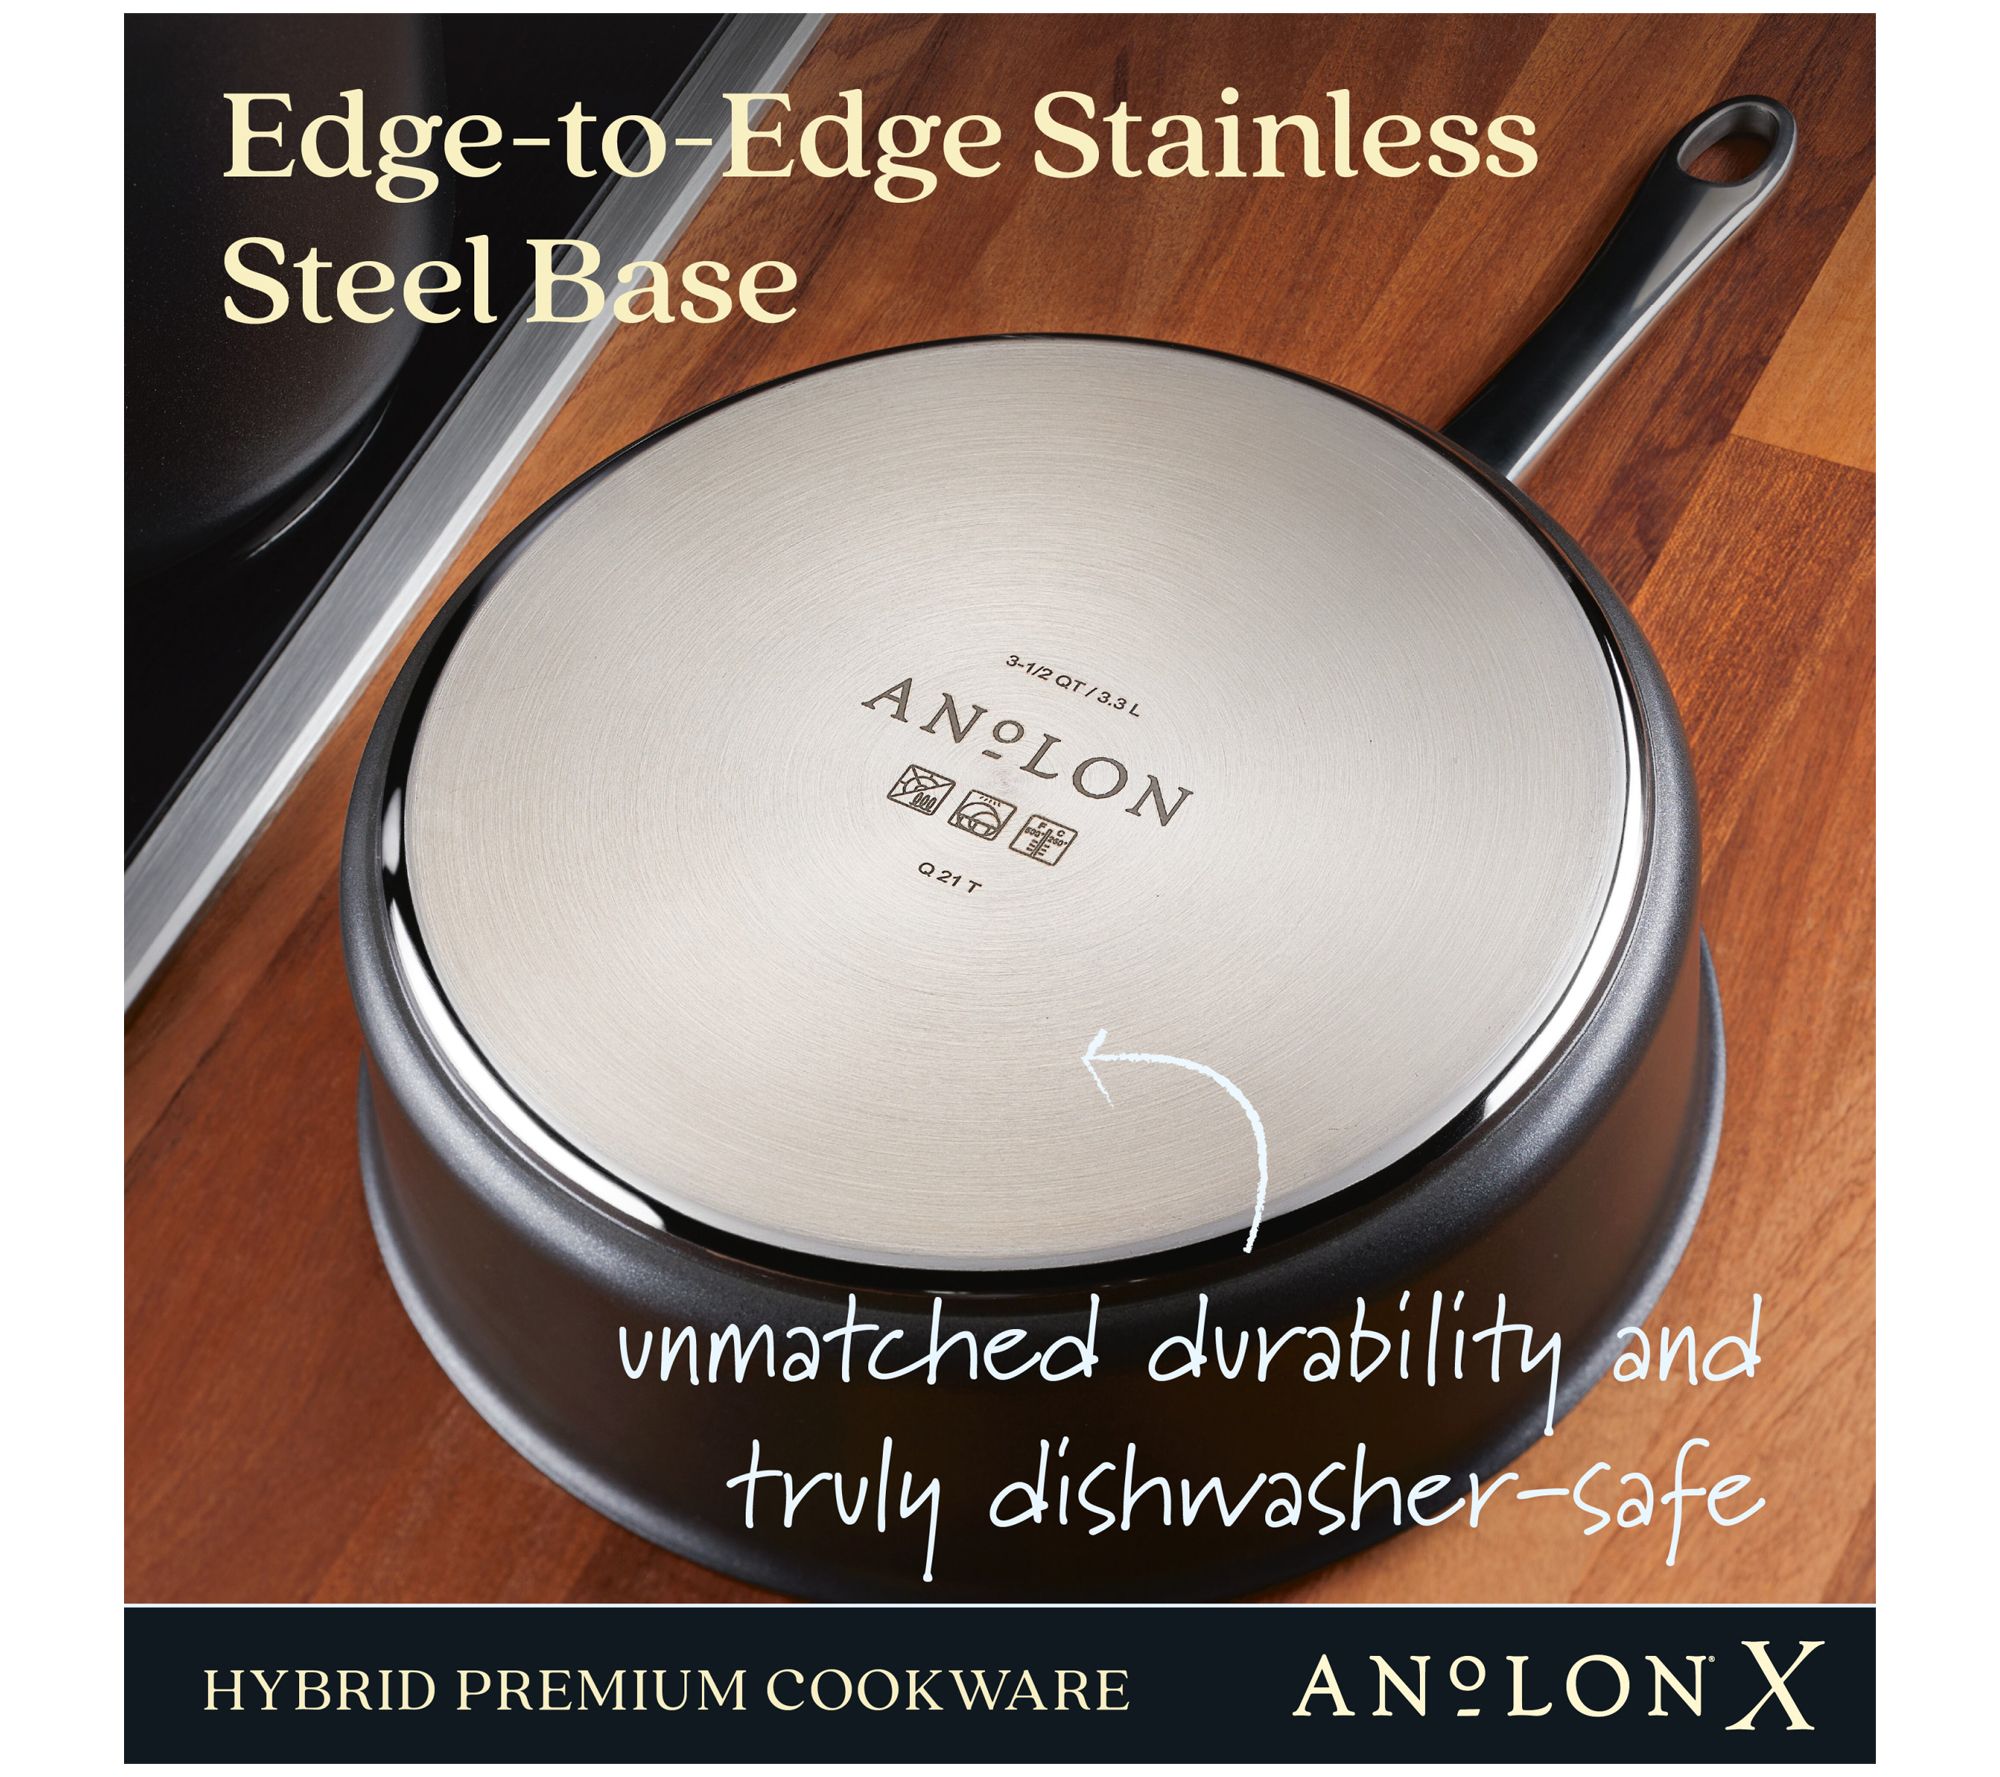 AnolonX Hybrid Nonstick Cookware Set, 8 Piece